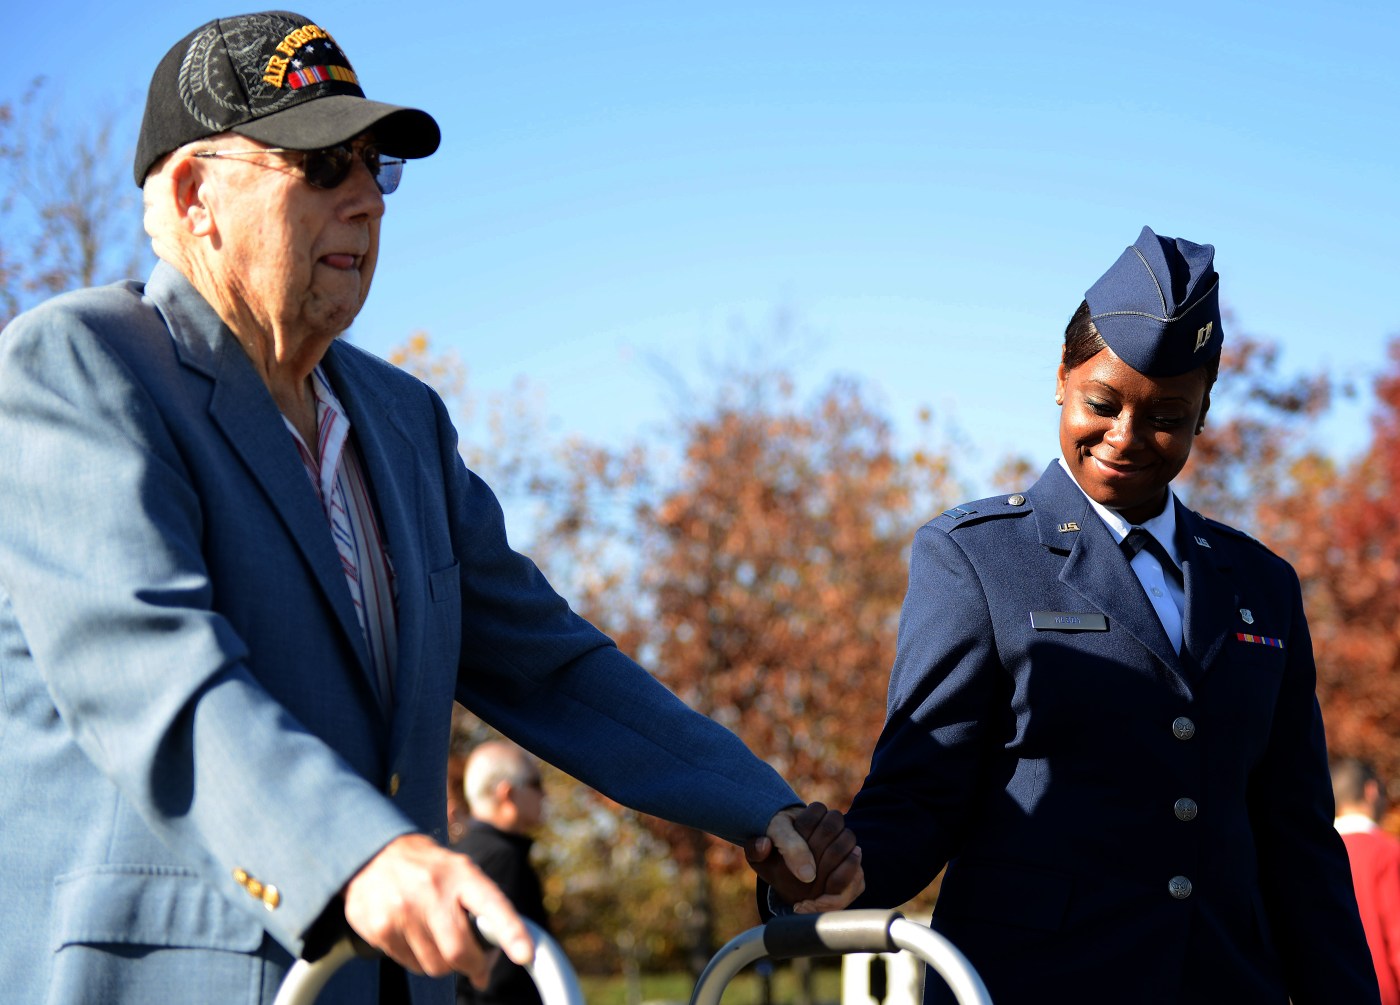 An Air Force Captain escorts an Air Force veteran.